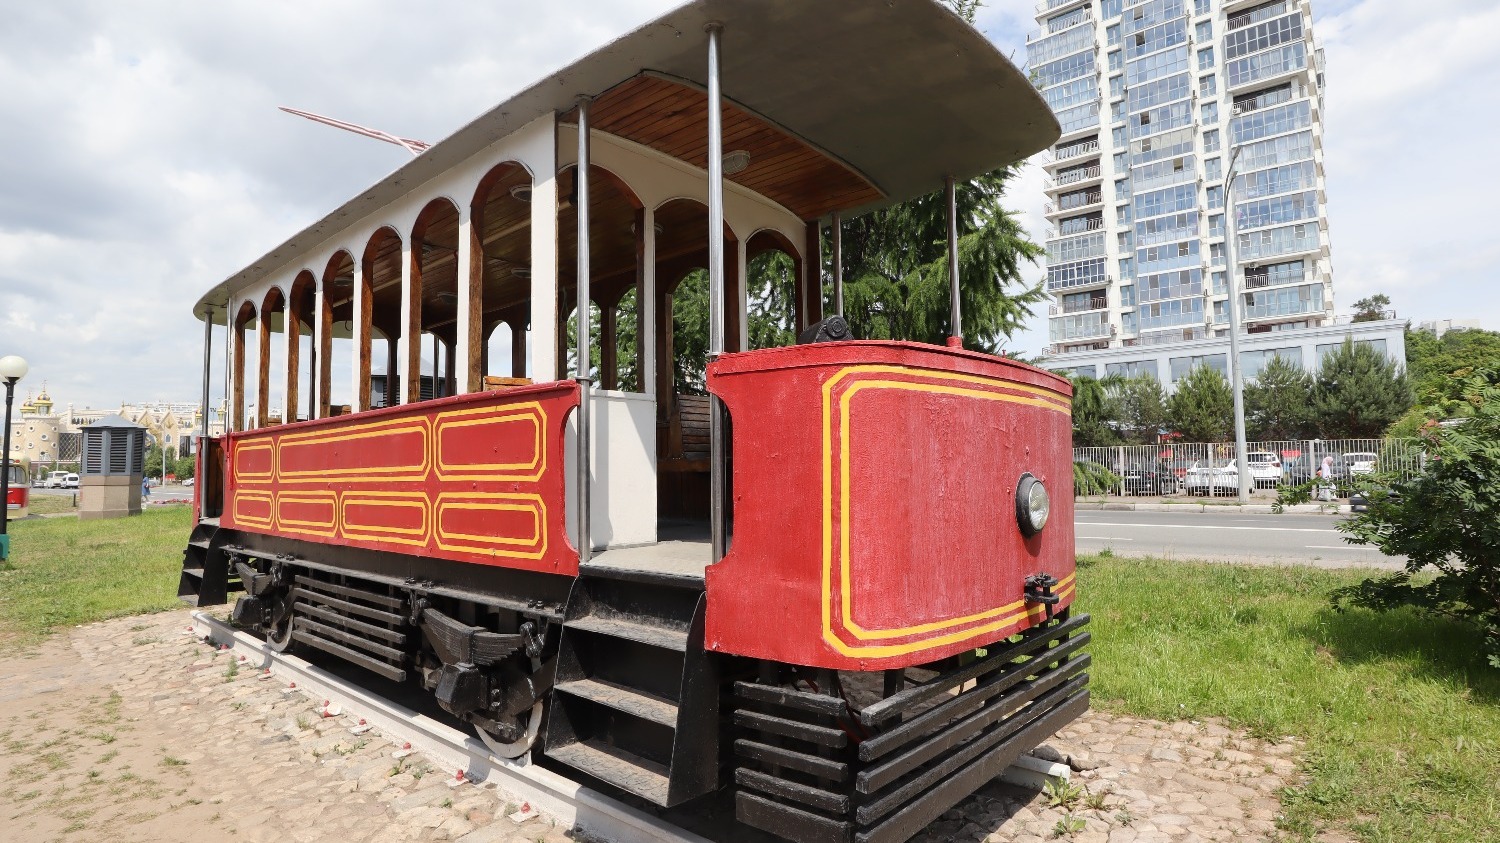 Трамвайная система в Казани - одна из старейших в России, движение на электрической тяге открыто в 1899 году